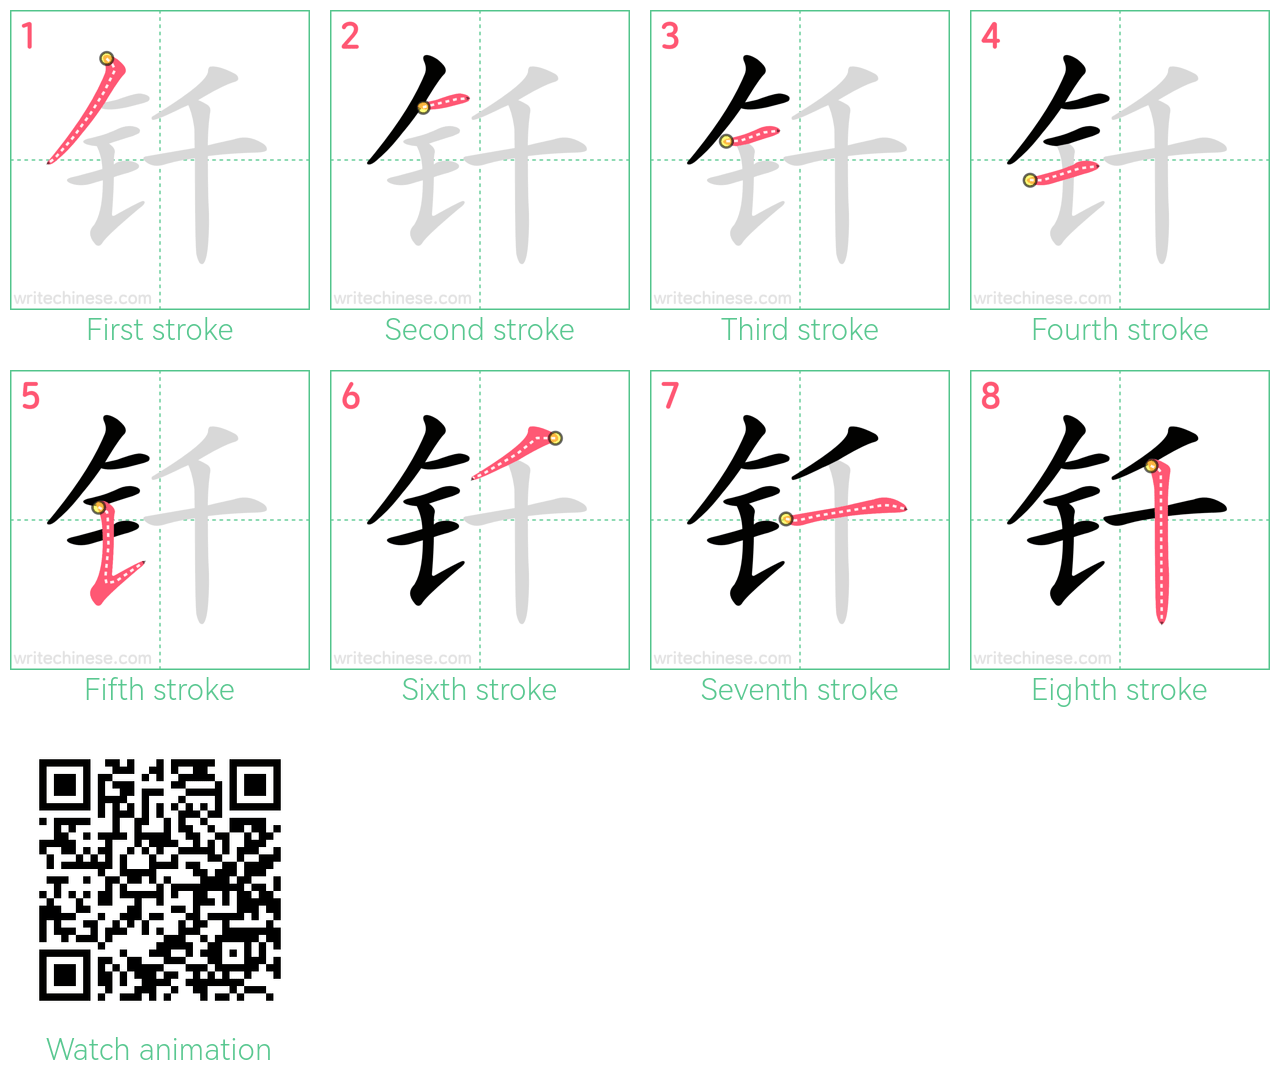 钎 step-by-step stroke order diagrams